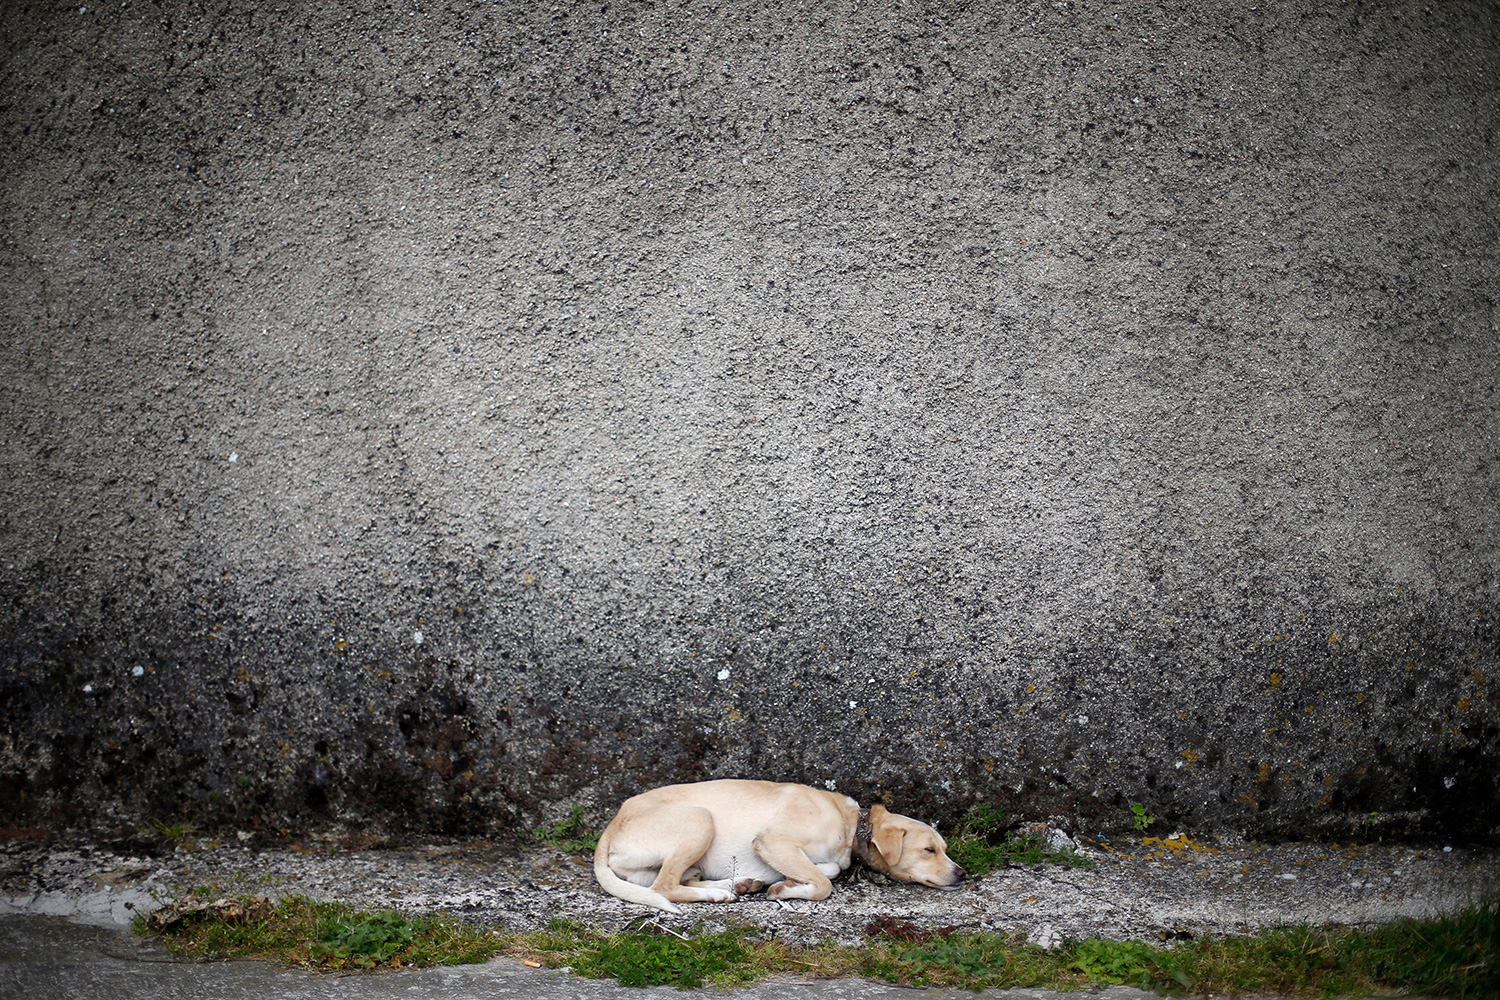 En España se abandonan más de 137.000 mascotas al año